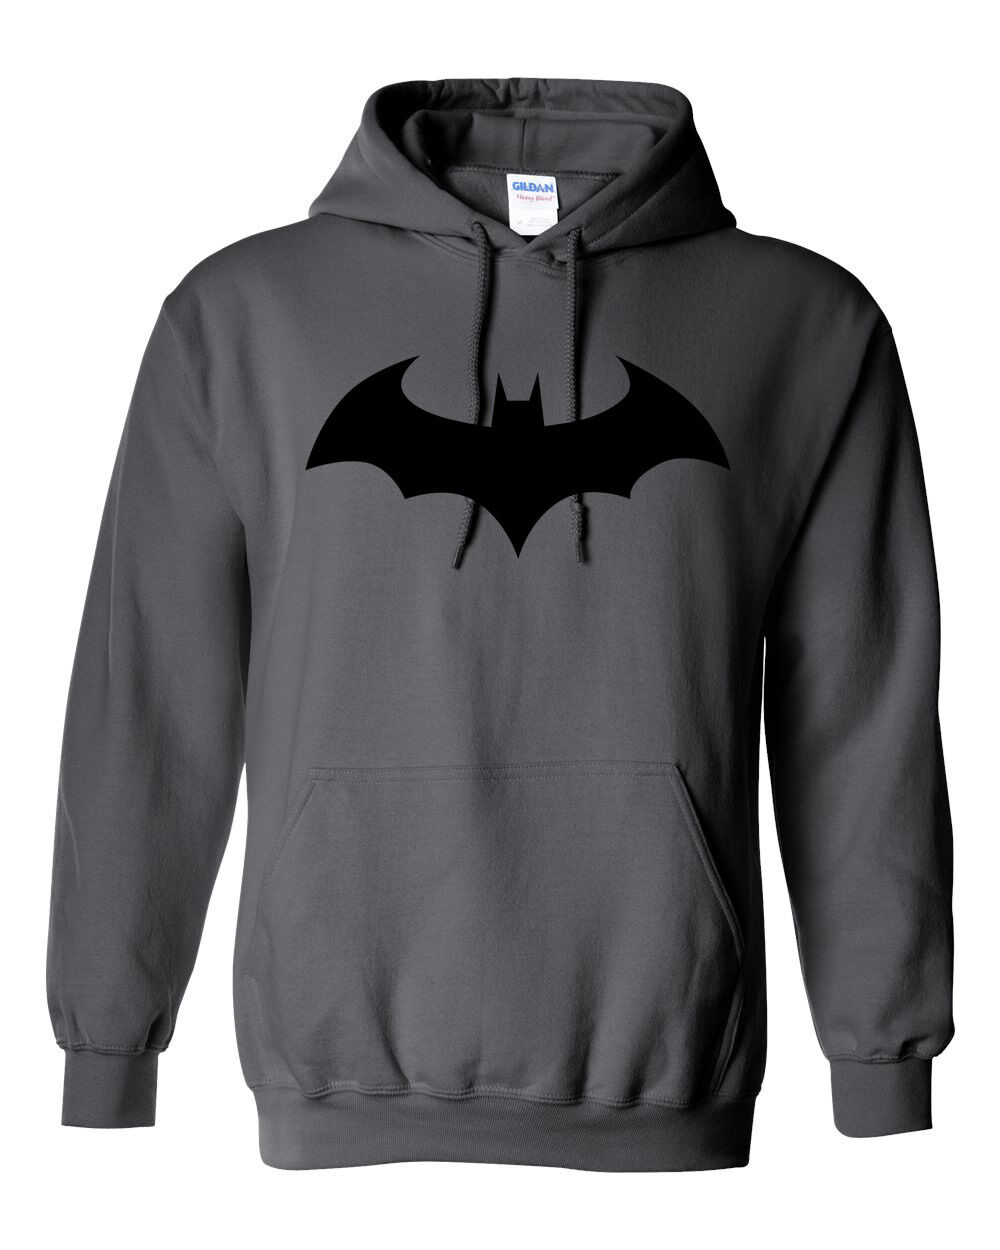 batman hooded sweatshirt